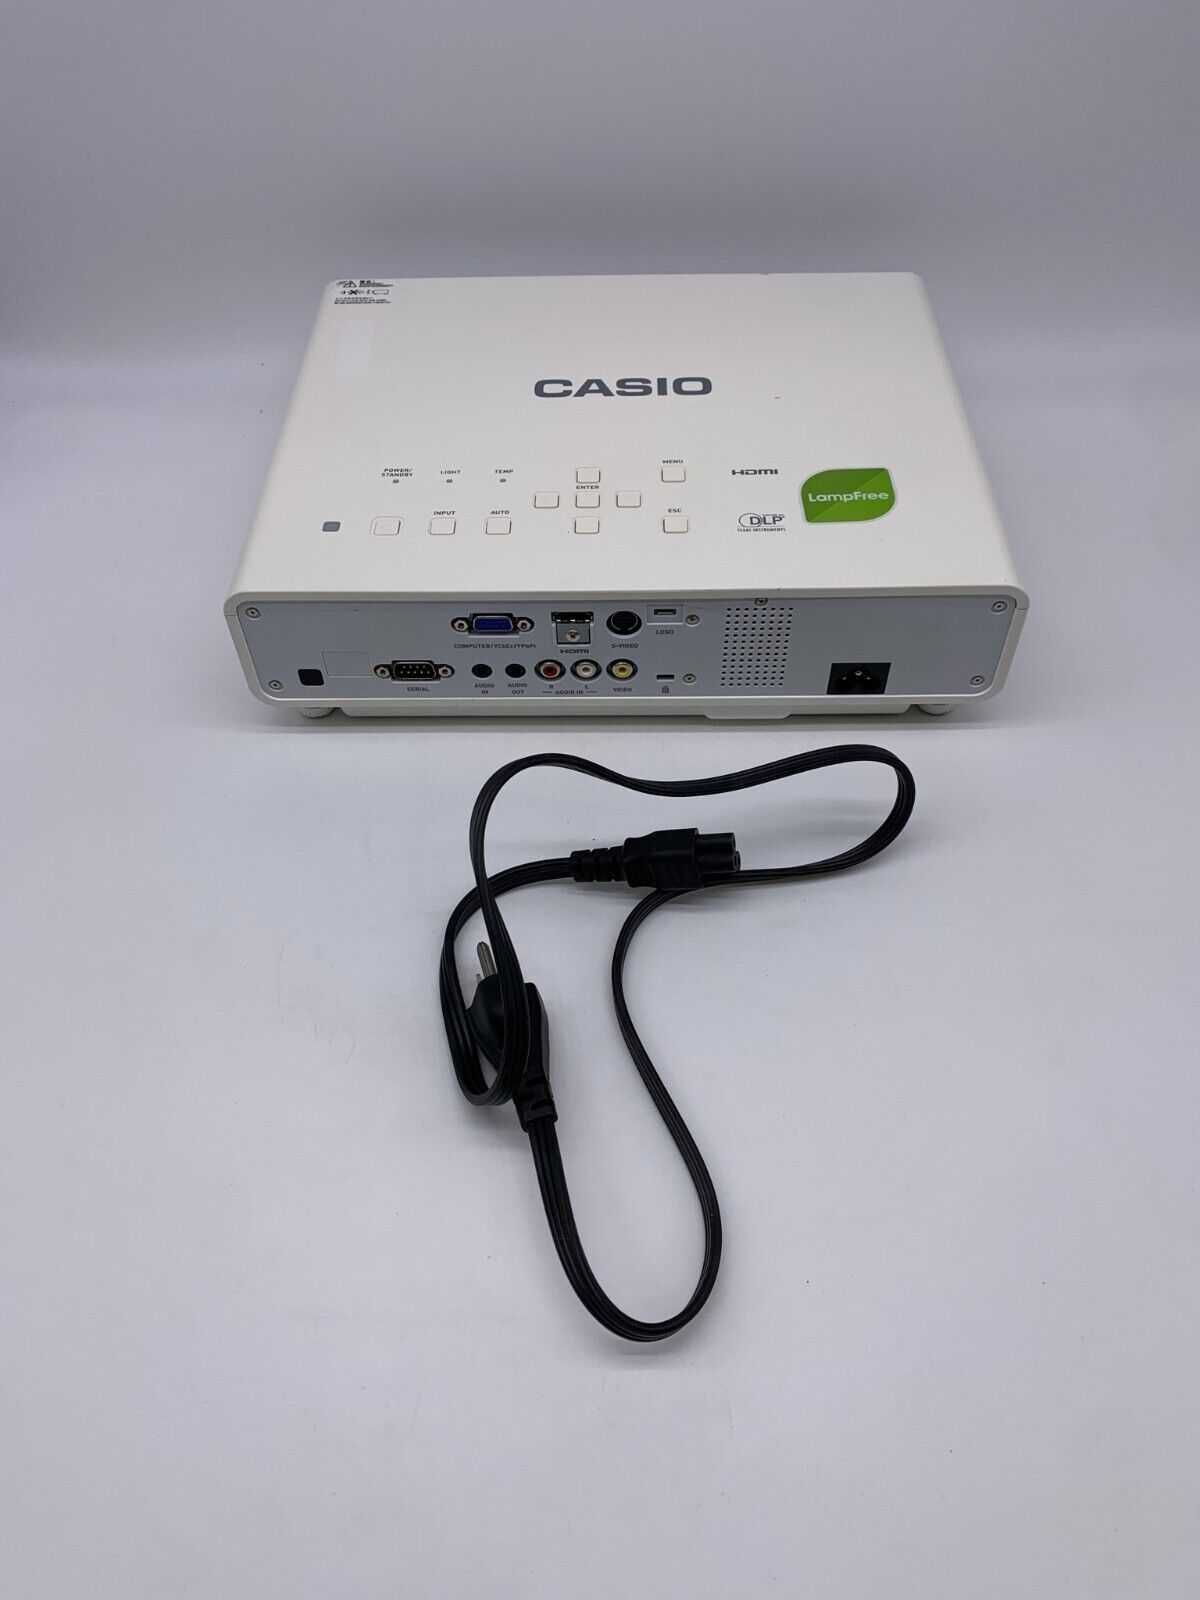 Проектор лазерно-світлодіодний Casio XJ-M150/141/A142 LED, 3500 ANSI